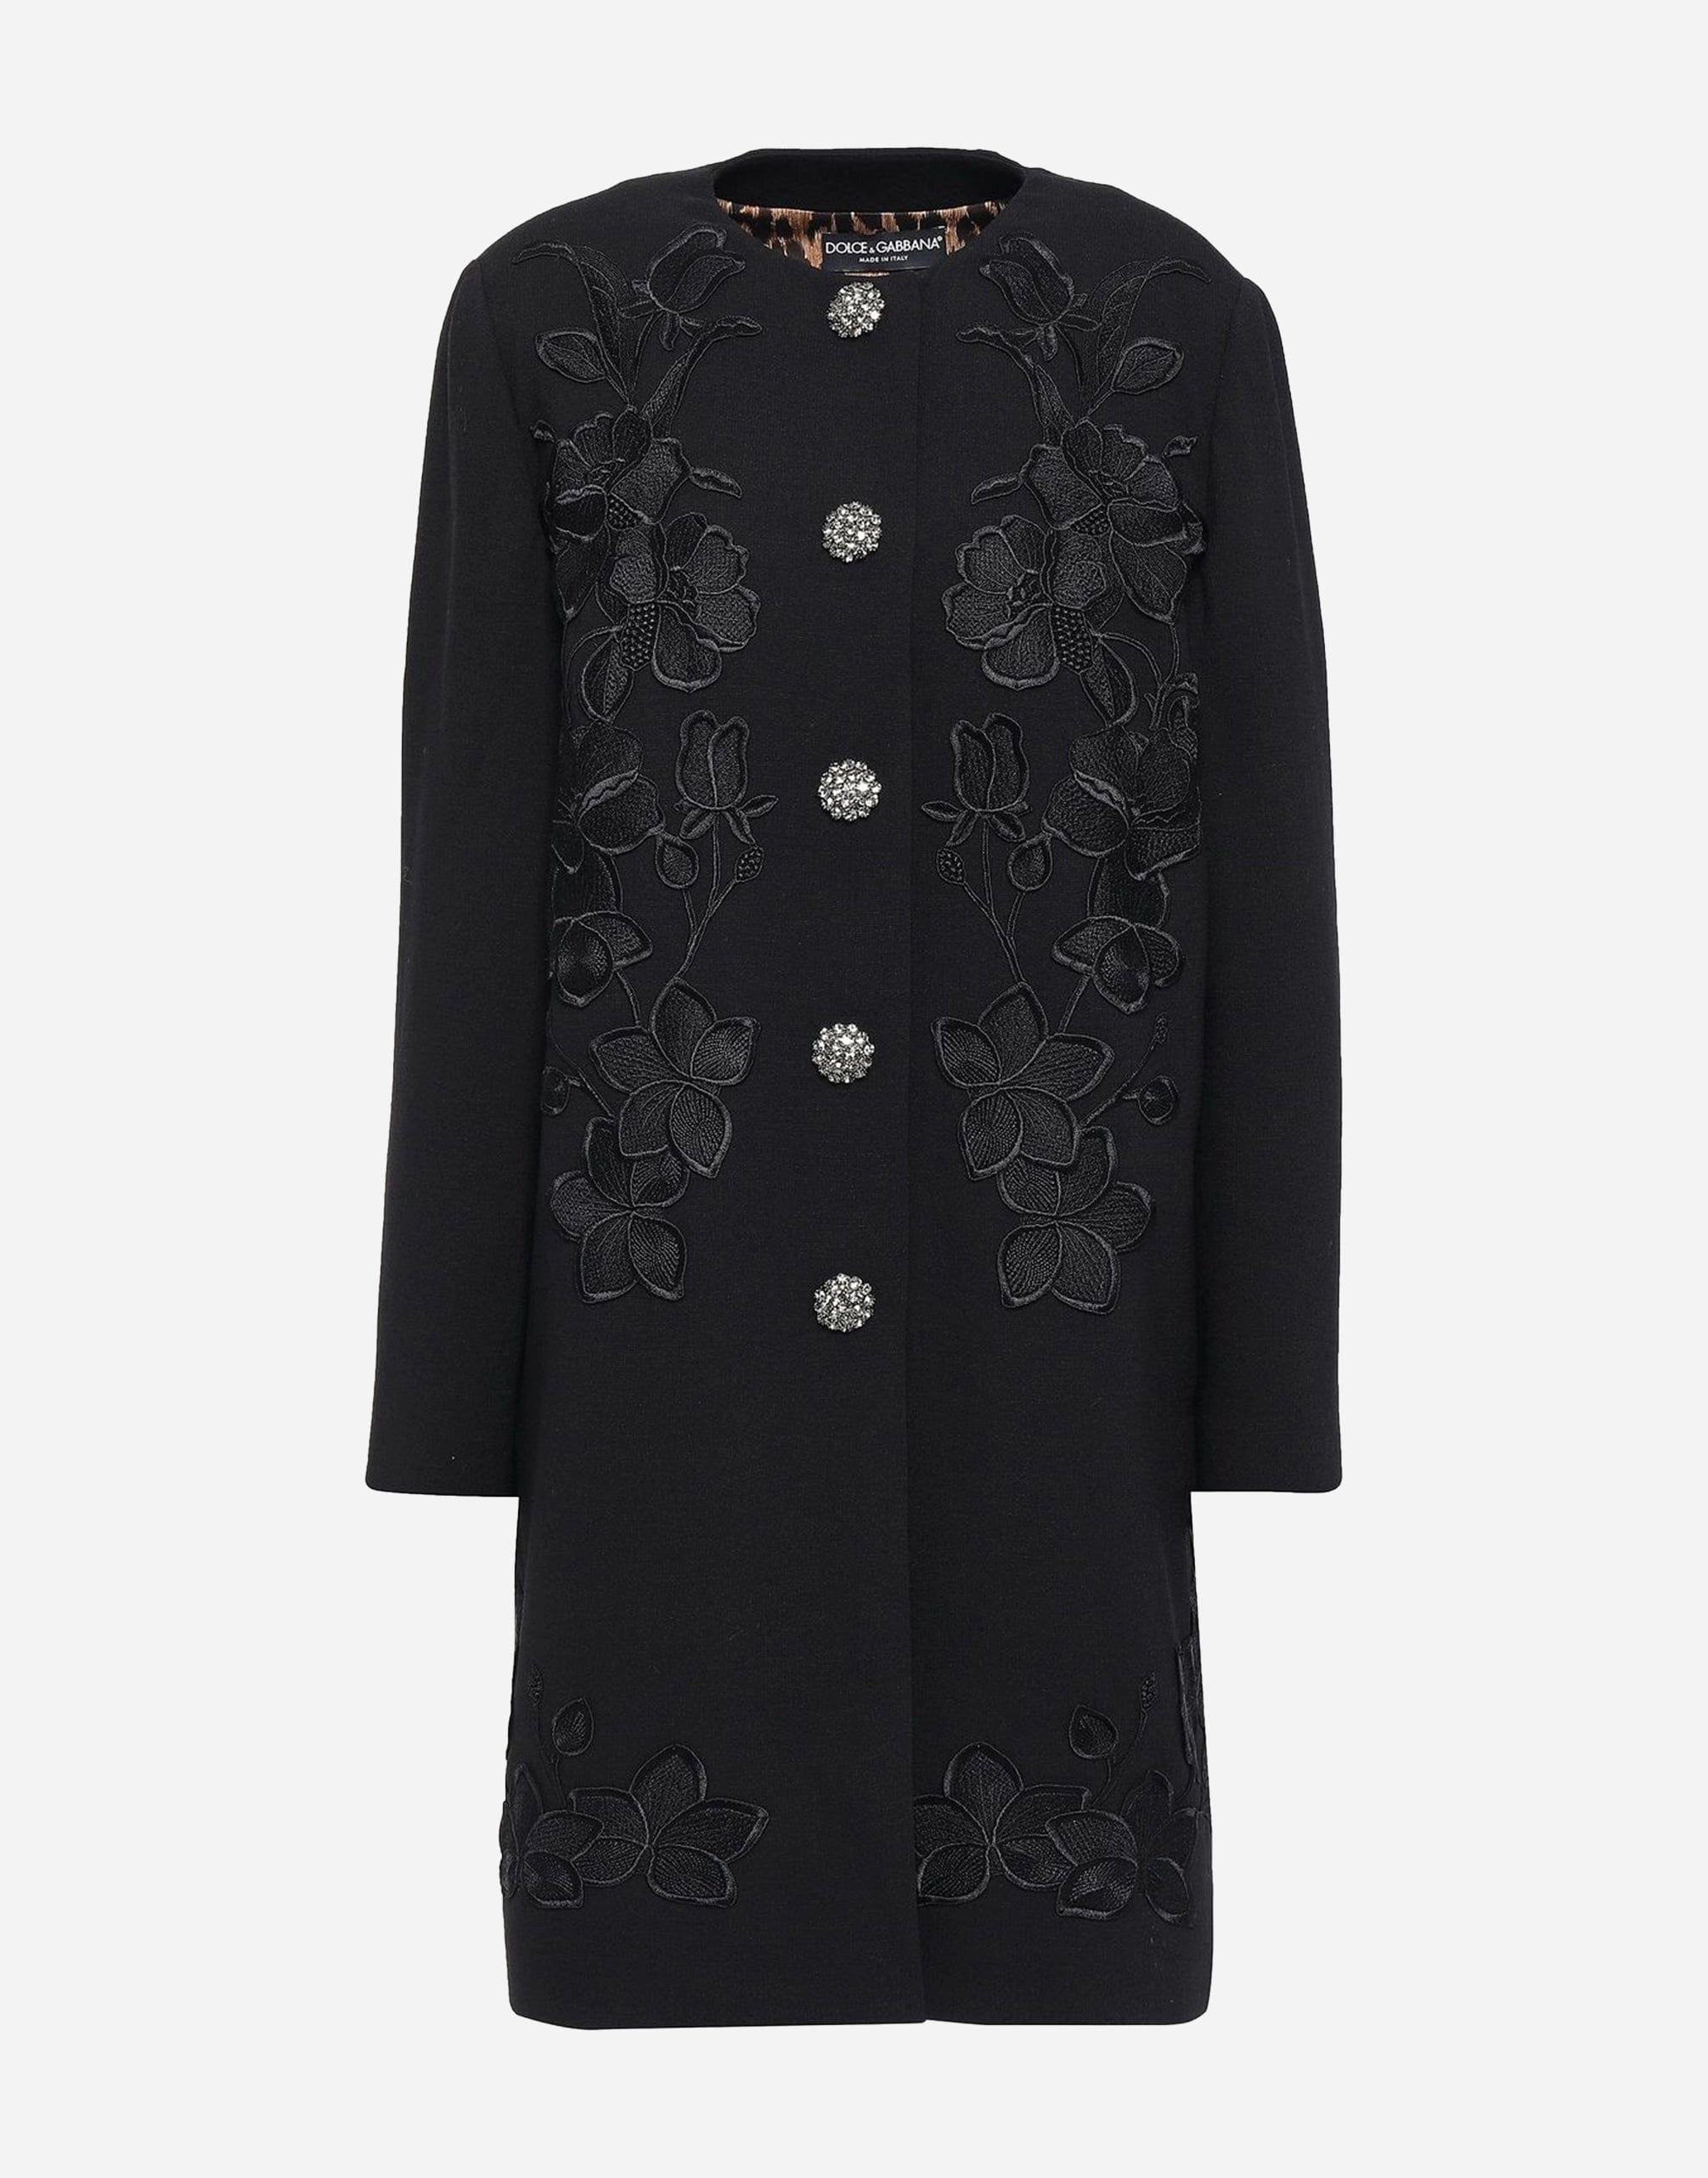 Dolce & Gabbana Embellished Wool-Blend Crepe Coat